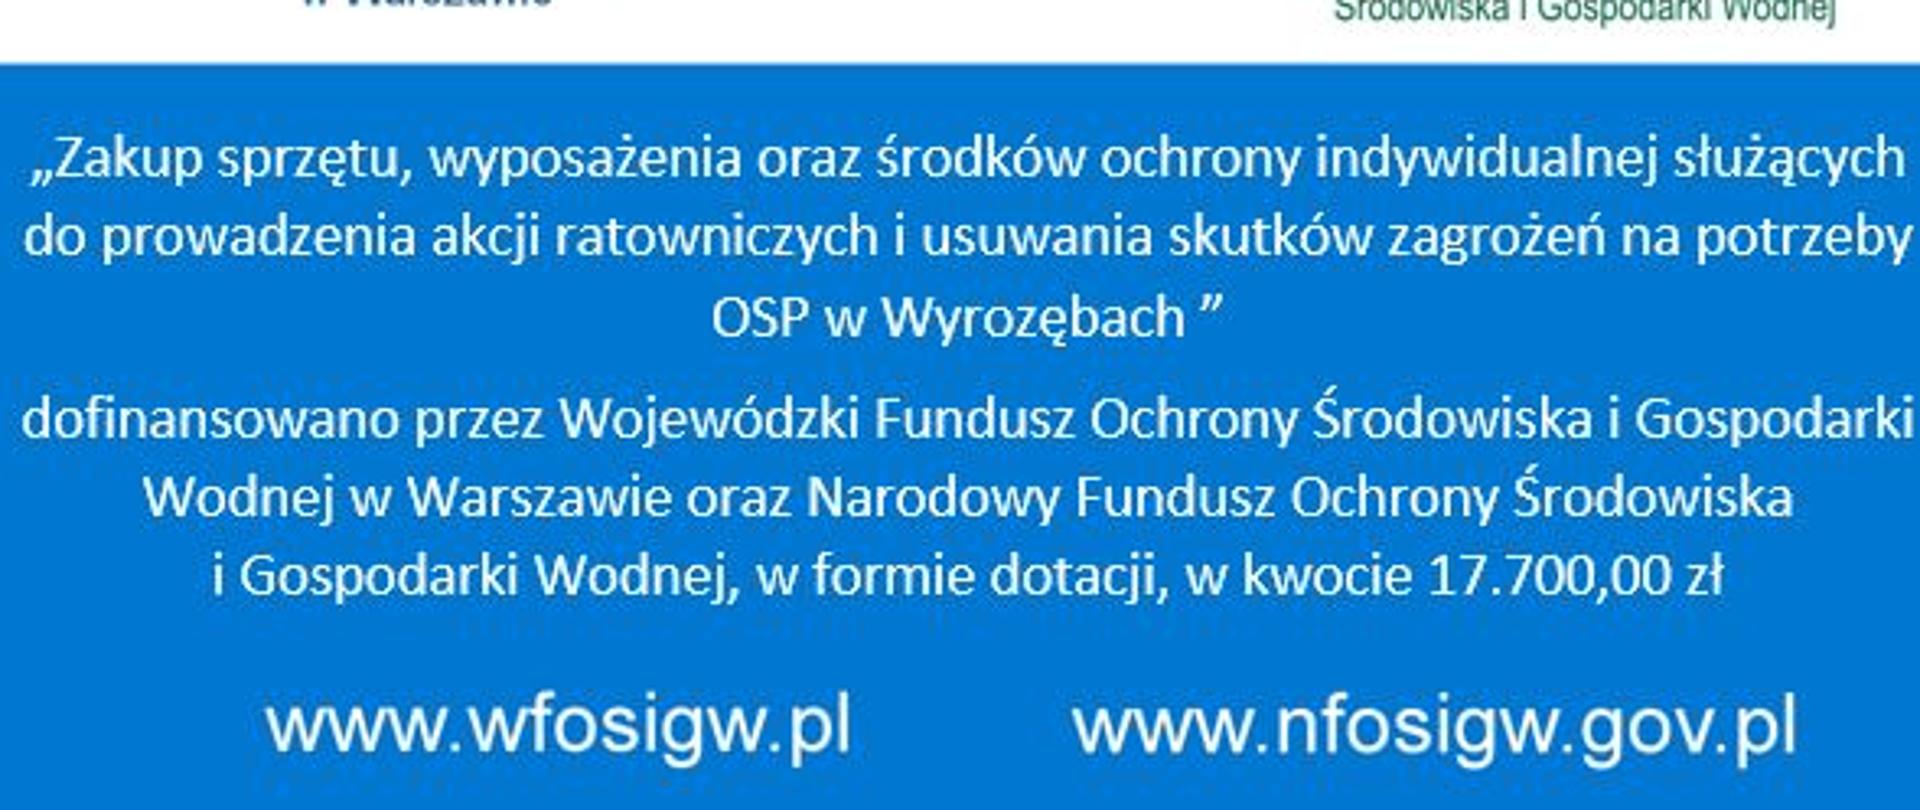 "Zakup sprzętu, wyposażenia oraz środków ochrony indywidualnej służących do prowadzenia akcji ratowniczych i usuwania skutków na potrzeby OSP w Wyrozębach"